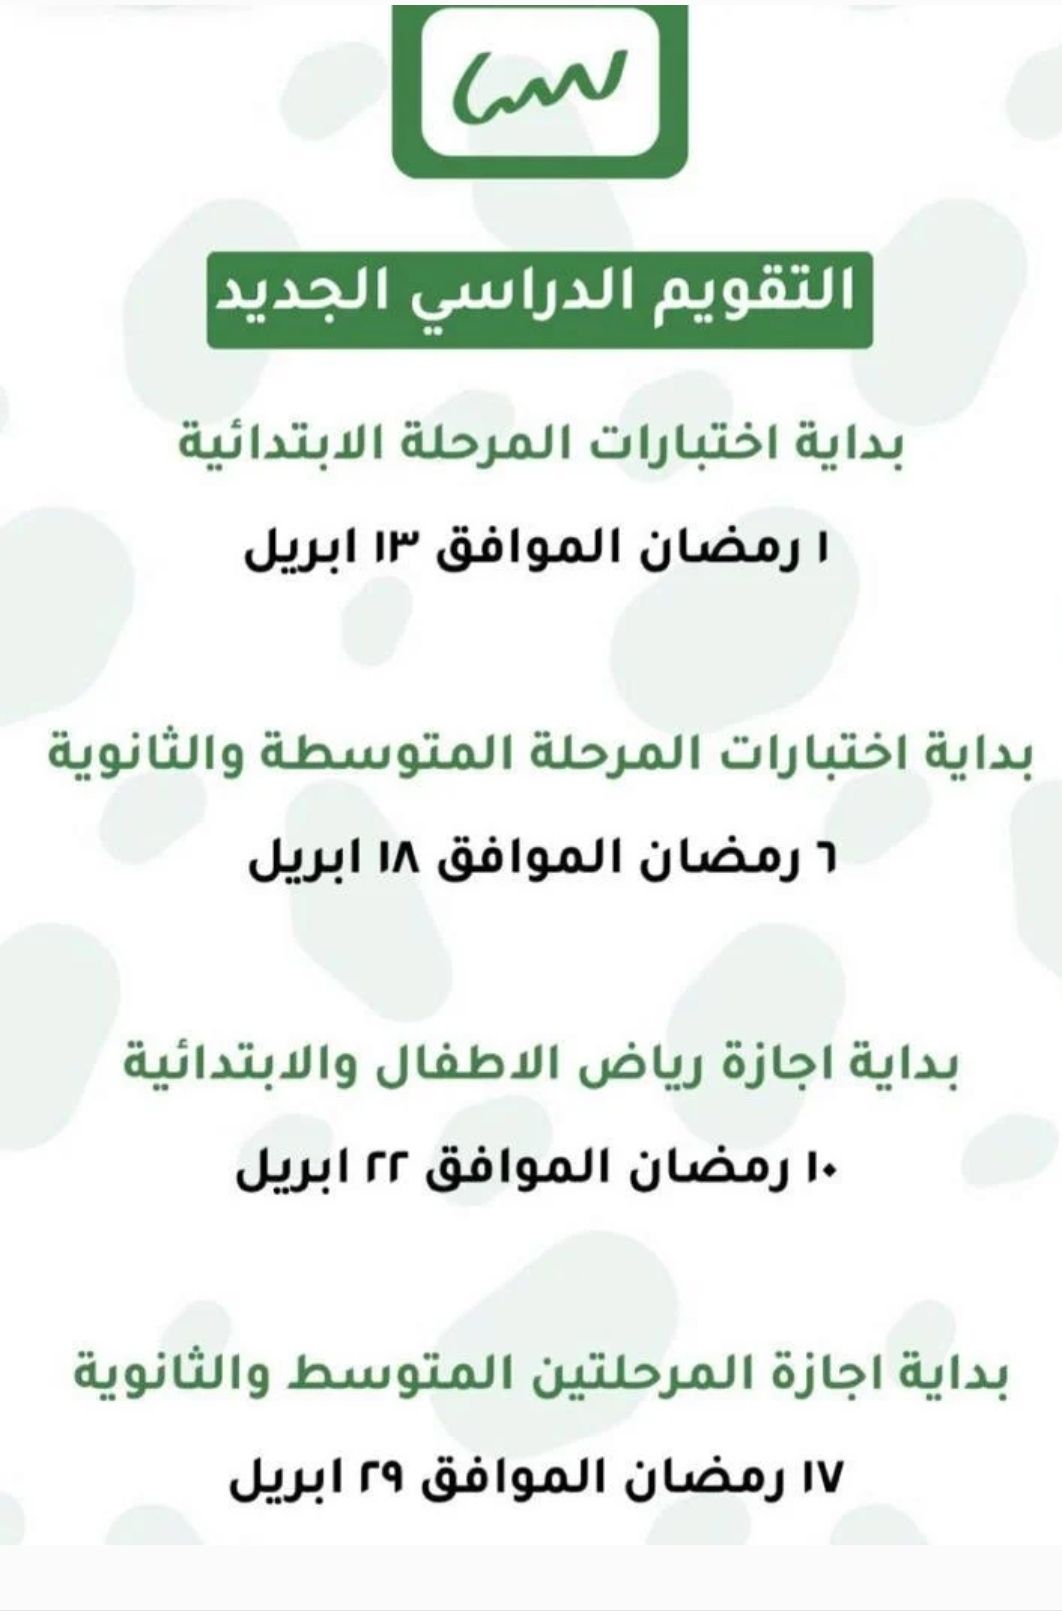 مواعيد اختبارات الفصل الدراسي الثاني لجميع المراحل التعليمية في المملكة العربية السعودية